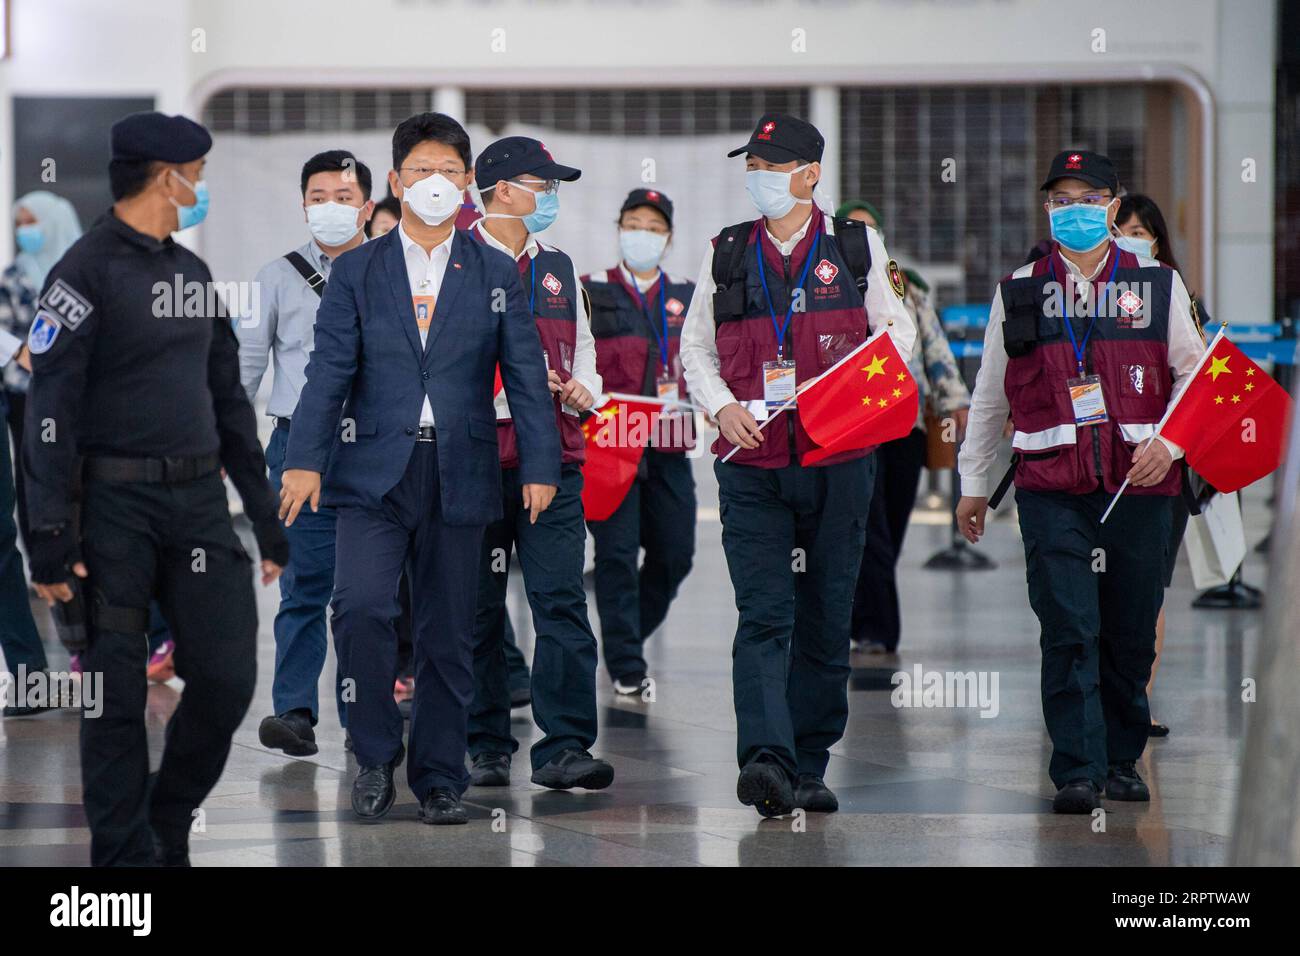 200418 -- KUALA LUMPUR, 18 de abril de 2020 -- Un equipo médico anti-COVID-19 de China a Malasia es recibido por el embajador chino en Malasia Bai Tian 2º L, frente en el aeropuerto internacional de Kuala Lumpur en Sepang, Selangor, Malasia, 18 de abril de 2020. Un equipo de expertos médicos enviado por el gobierno chino llegó a Malasia el sábado para ayudar al país a combatir la pandemia de COVID-19. El equipo de expertos de ocho miembros fue recibido por el embajador chino en Malasia Bai Tian y funcionarios del Ministerio de Salud de Malasia a su llegada al aeropuerto internacional de Kuala Lumpur. MALASIA-COVI Foto de stock